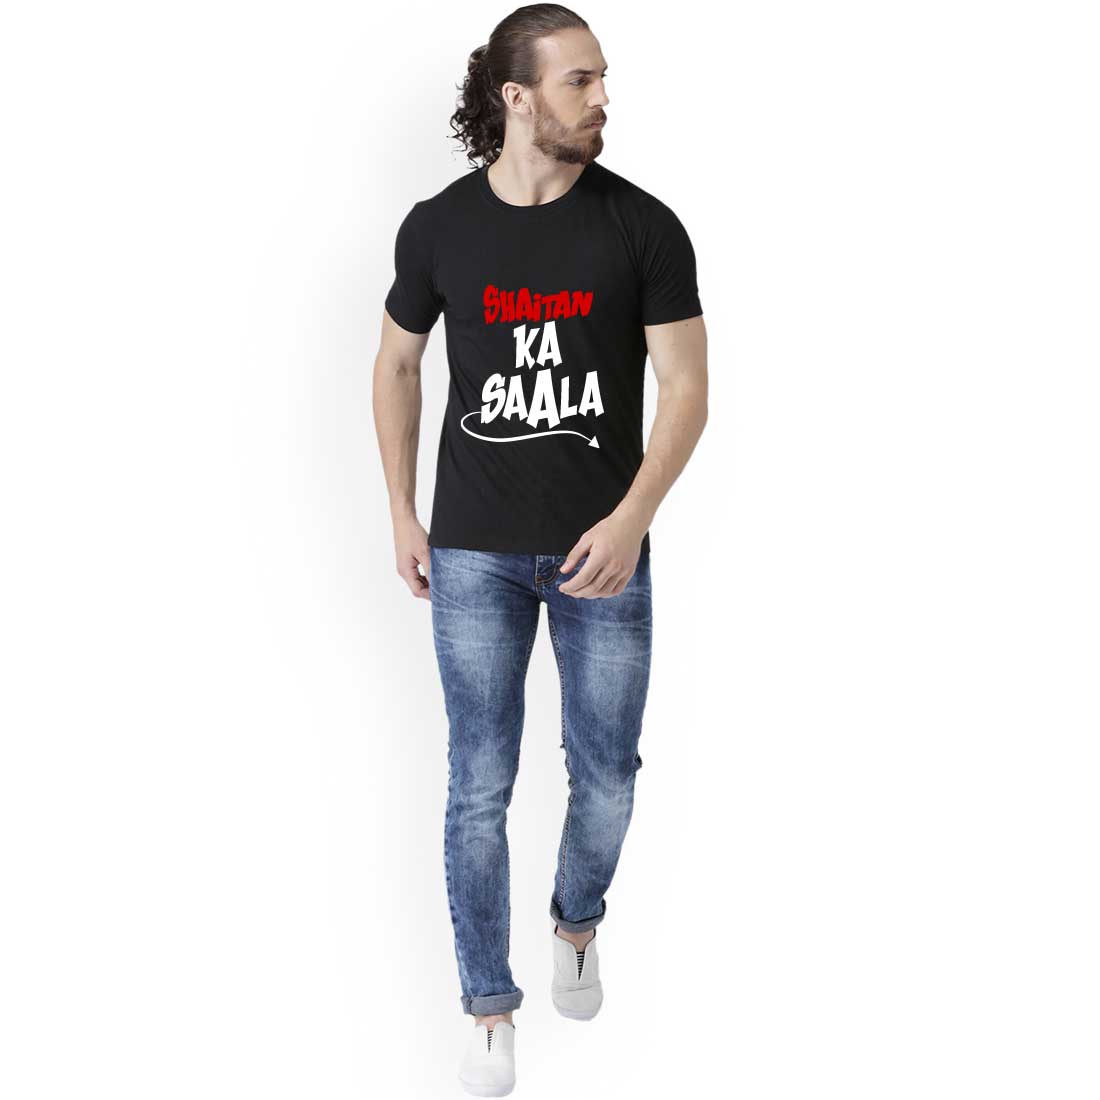 Shaitan Ka Saala Black Men T-Shirt